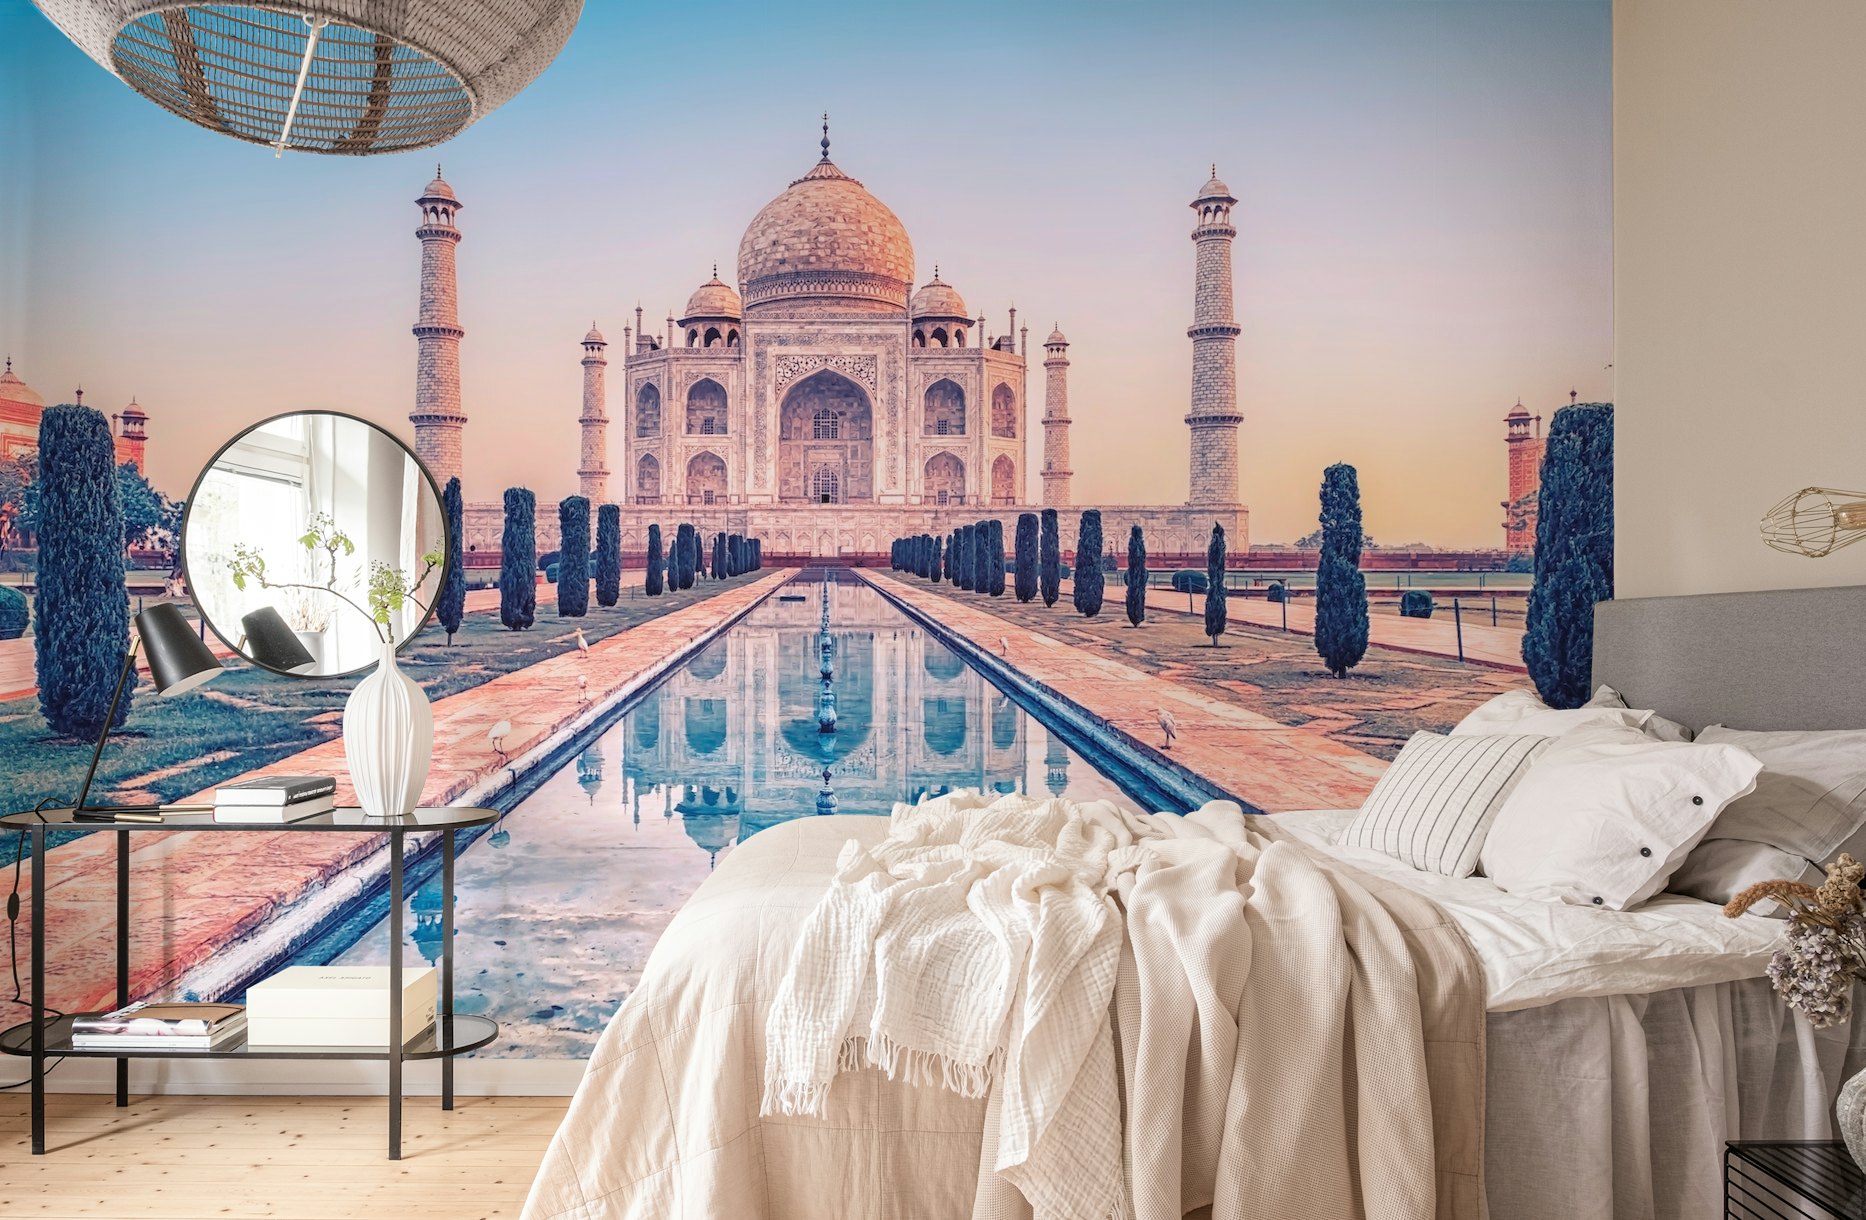 Taj Mahal Morning wallpaper